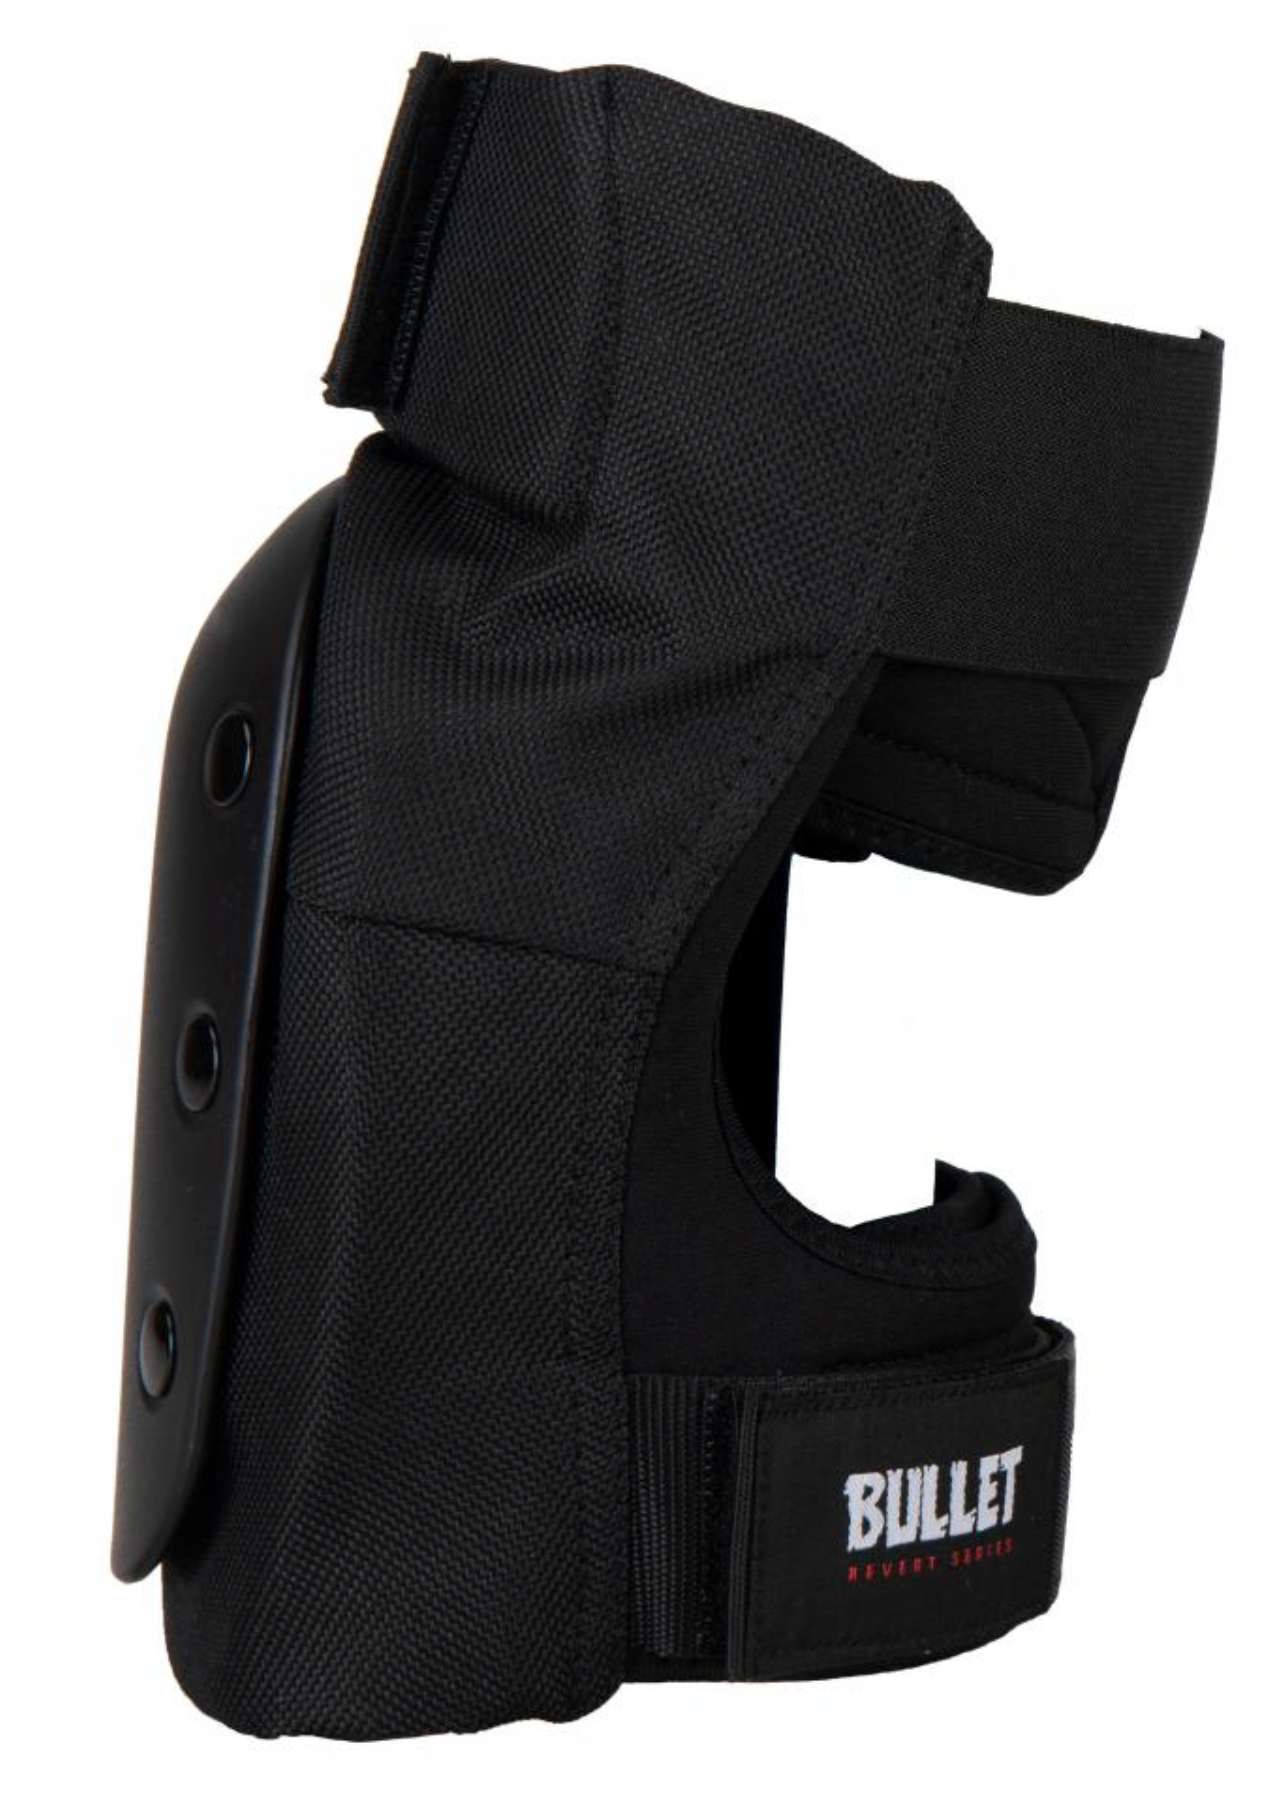 Bullet Pads Revert Kne Beskyttelse